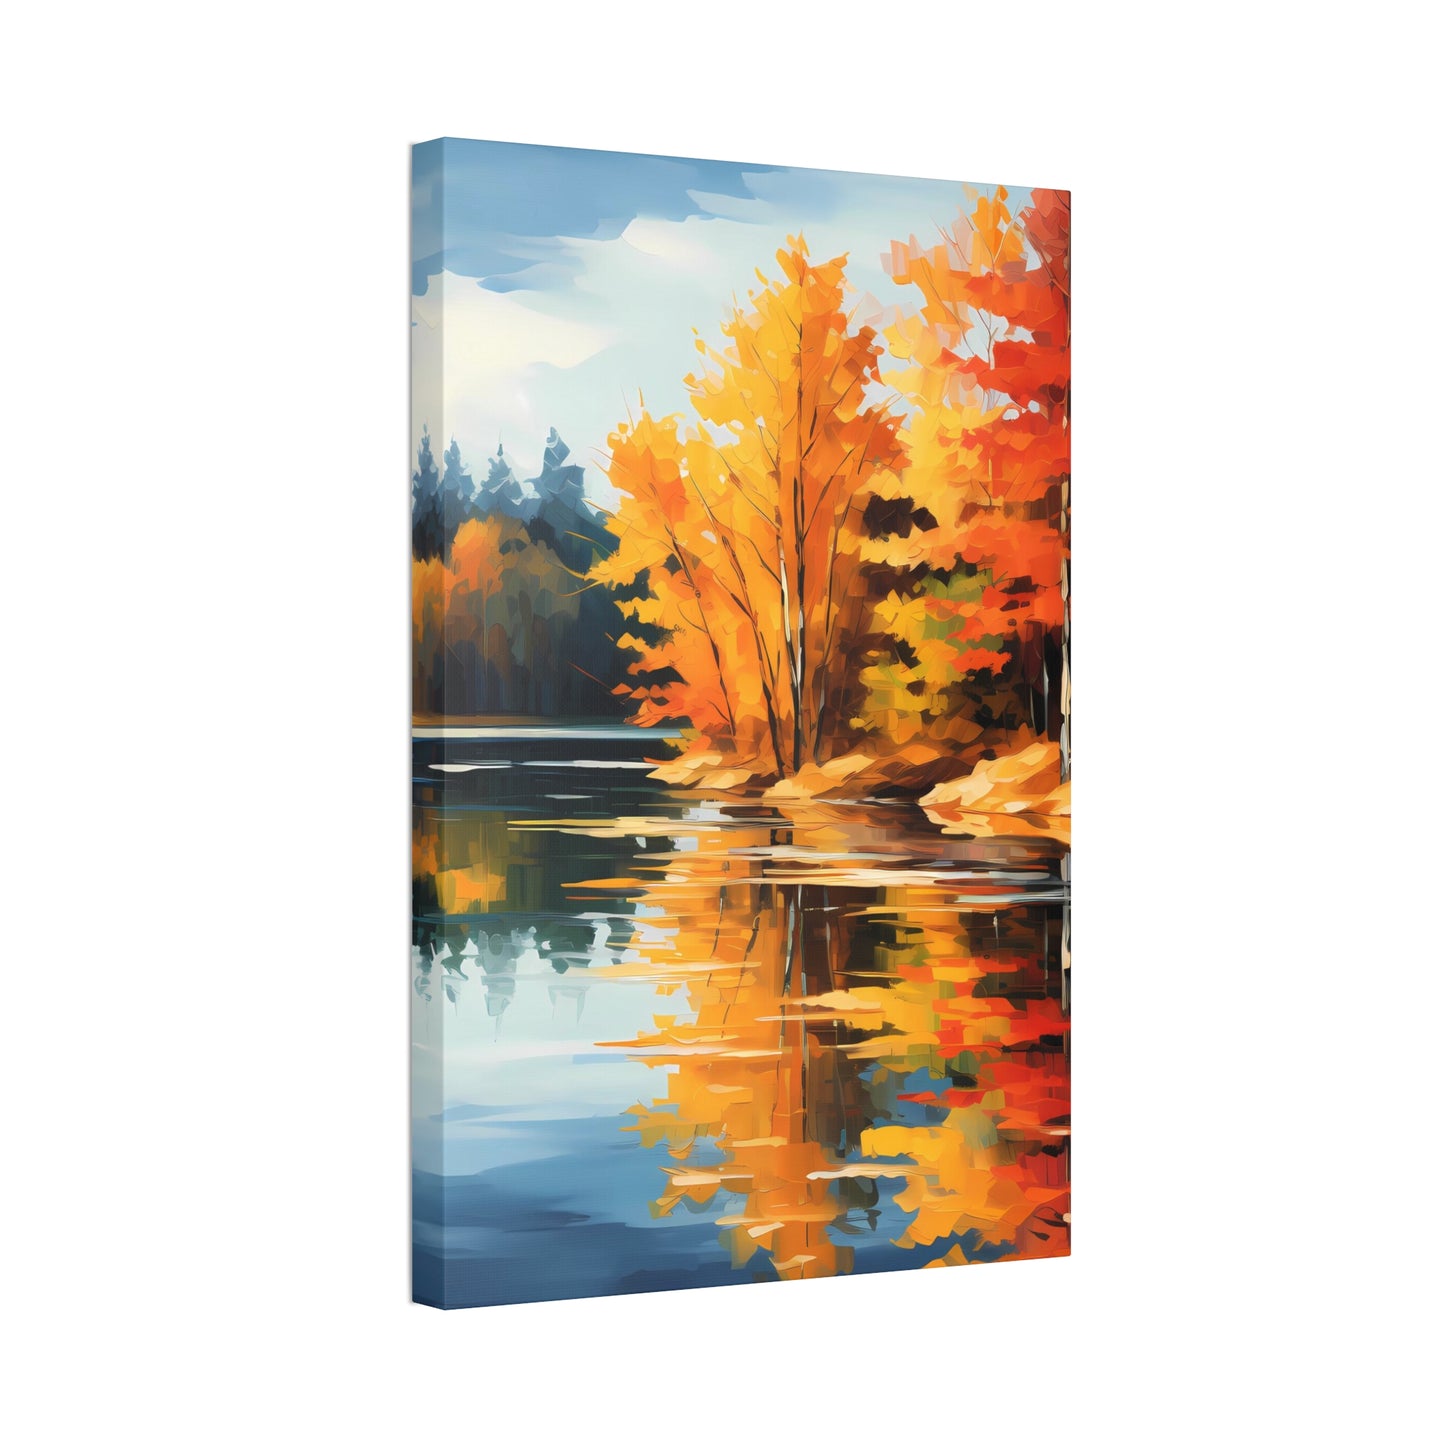 Autumn's Mirror Lake